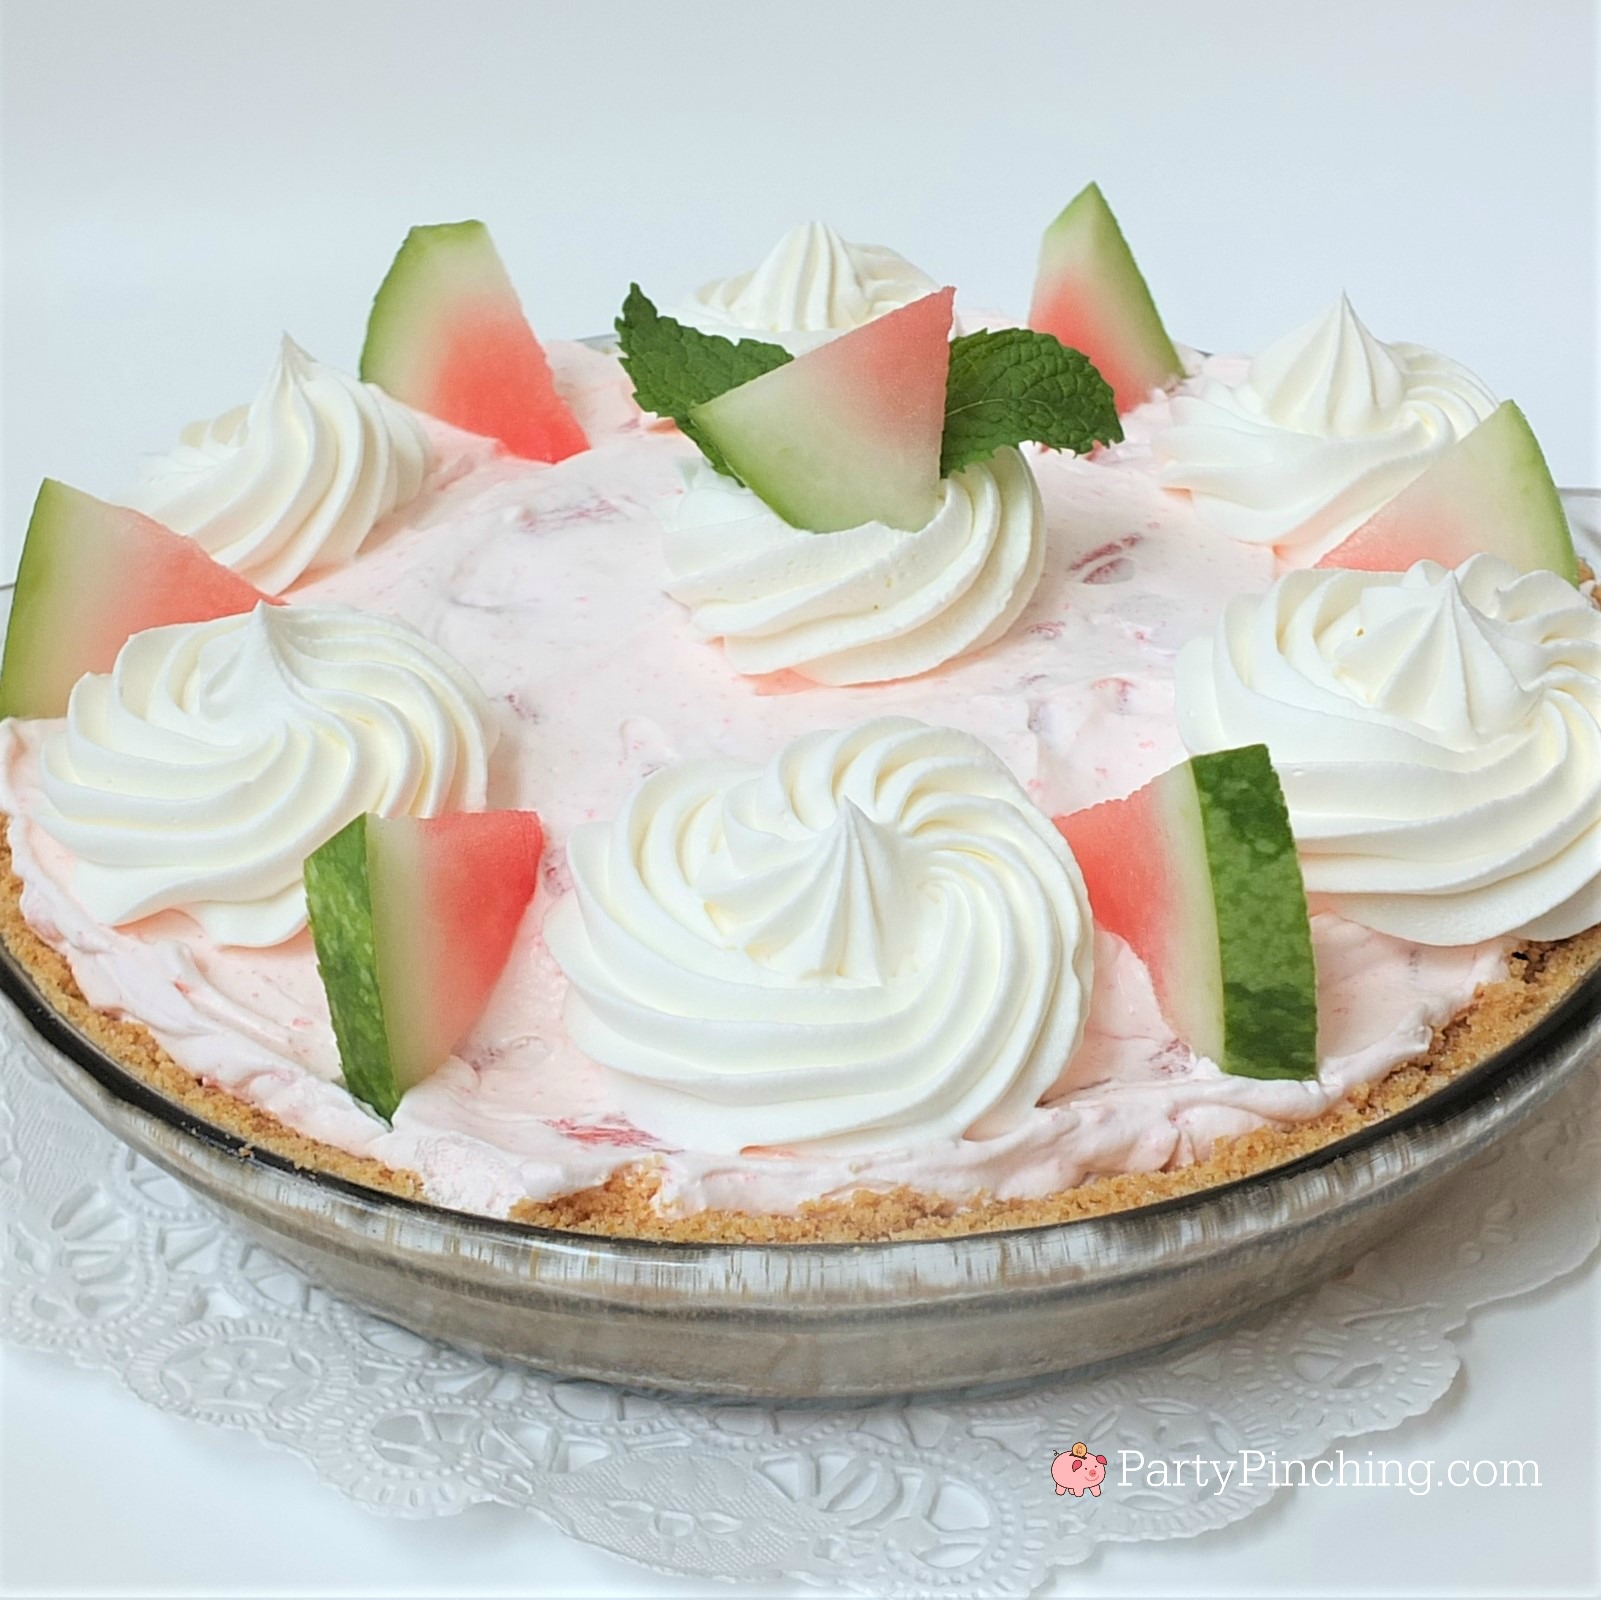 Watermelon Pie: A Refreshing Summer Dessert Recipe